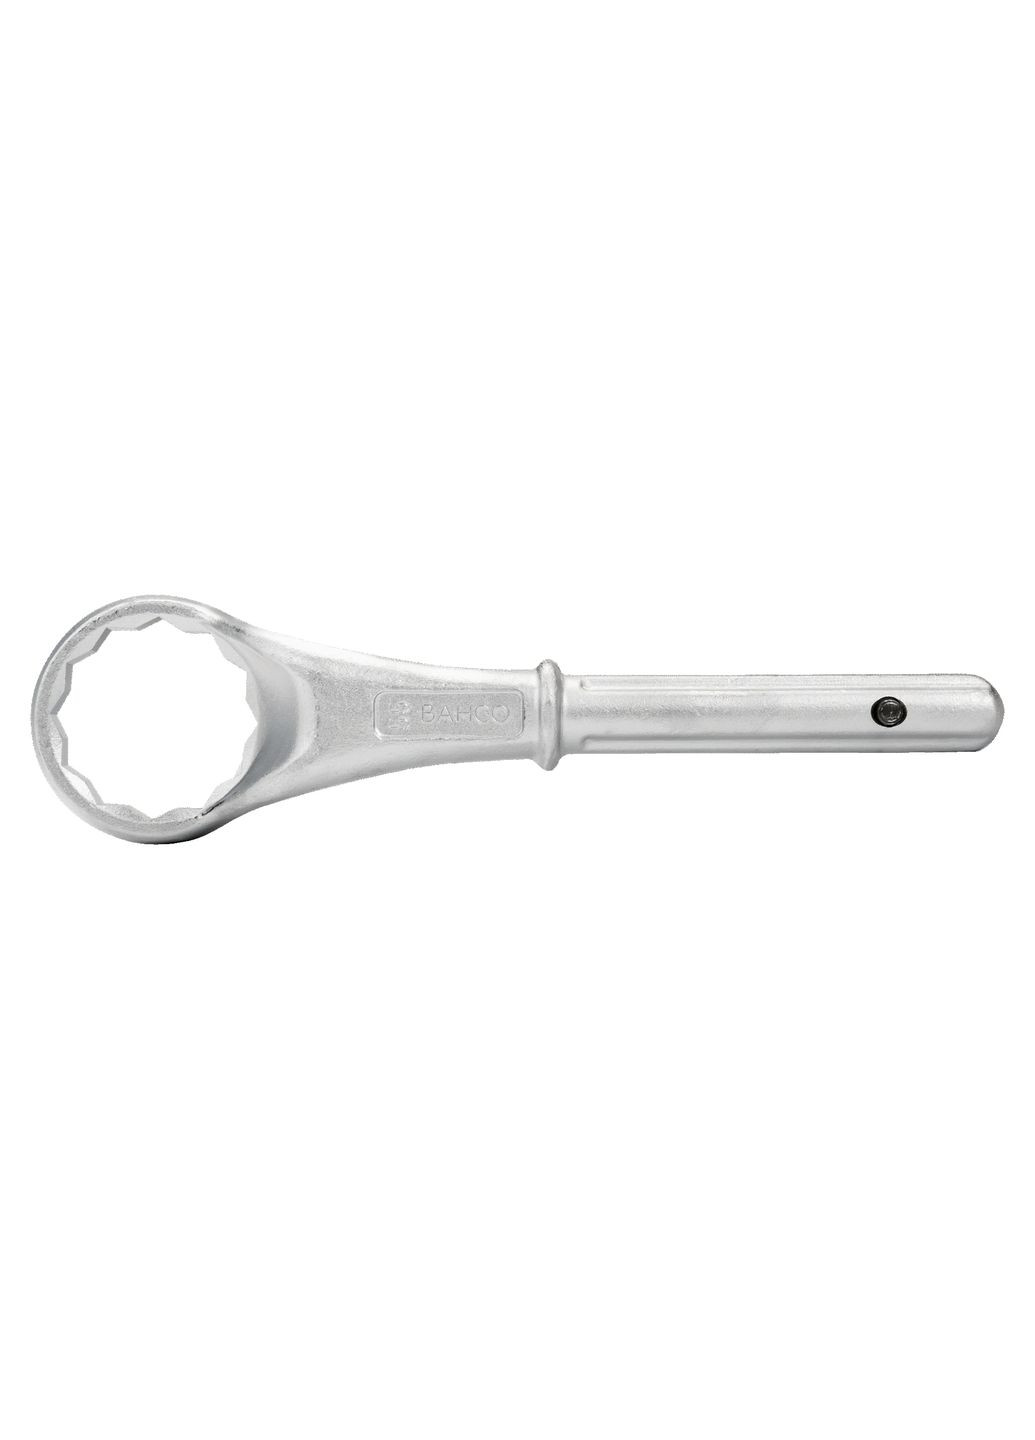 Ключ накидной односторонний 85 мм усиленный со смещением Crv сталь (16463) Bahco (294909578)